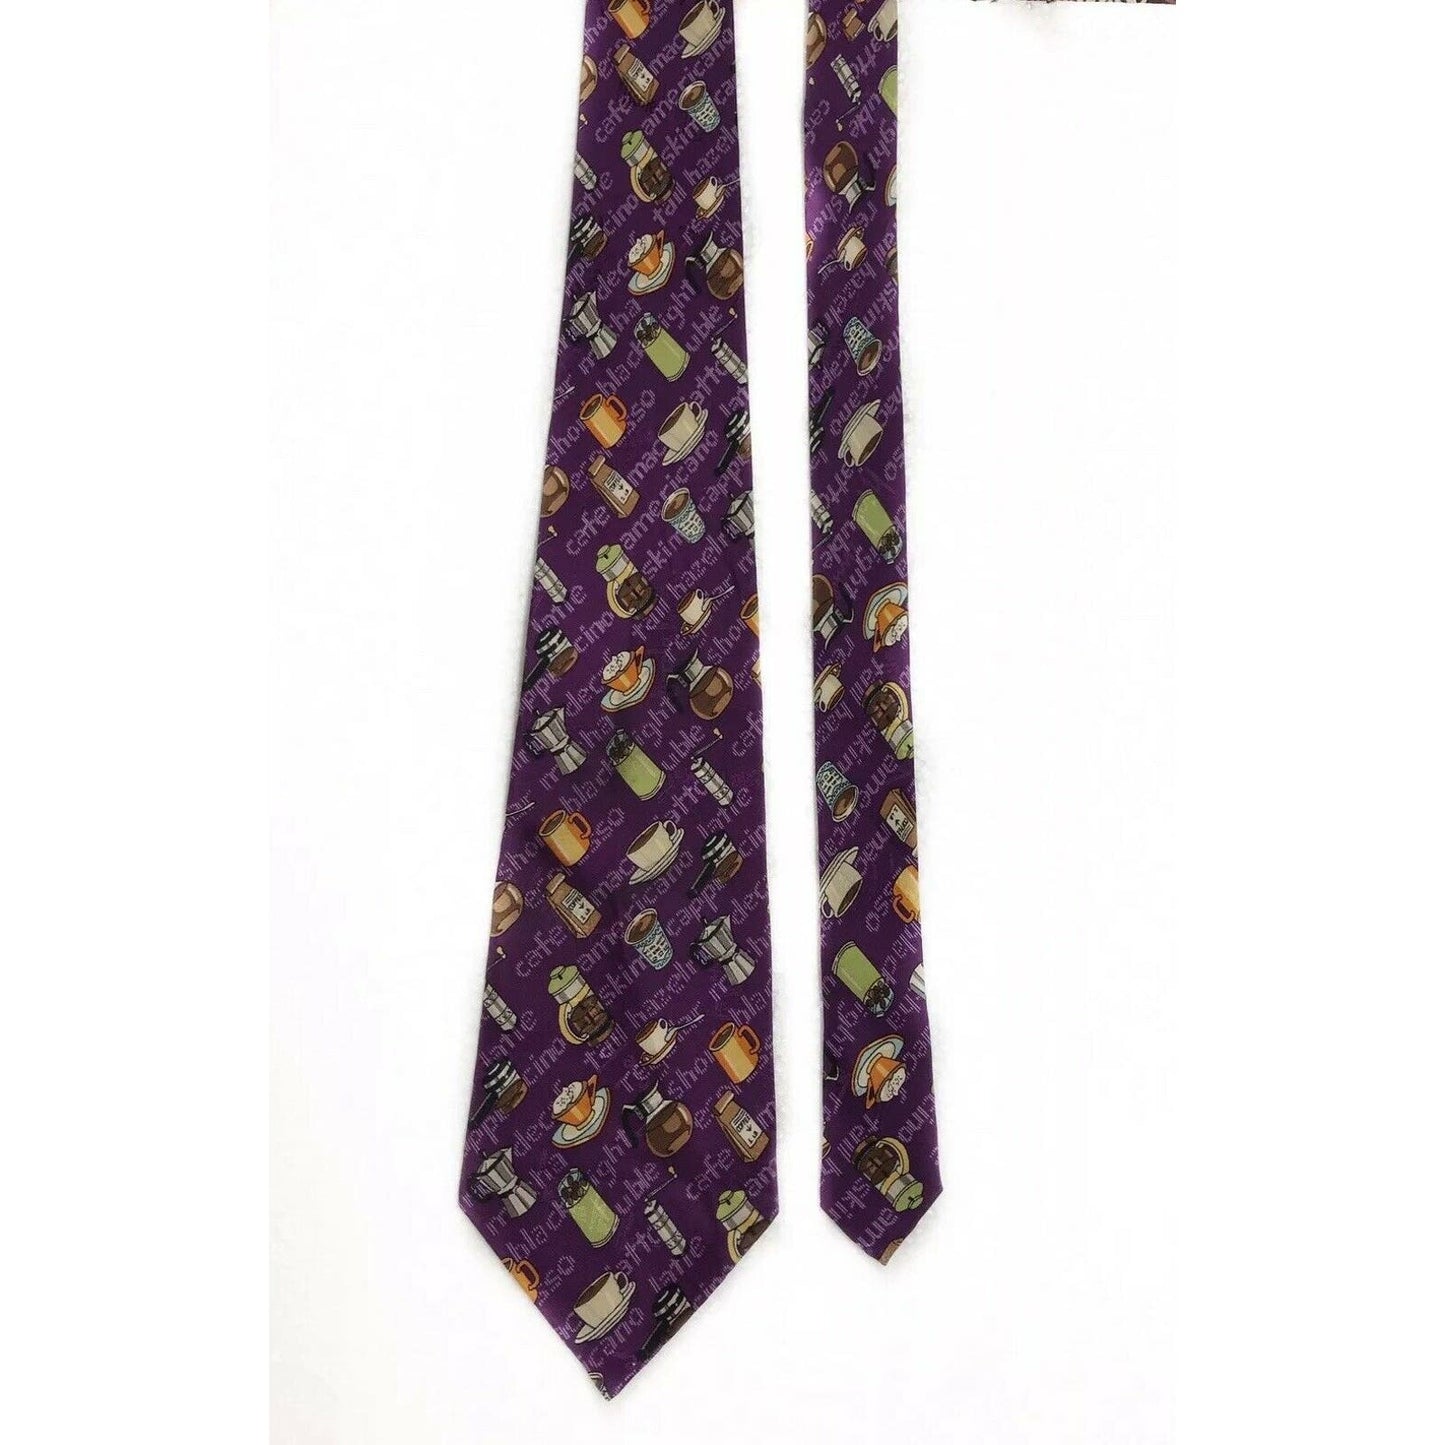 Nicole Miller Coffee Cappecino Americano Decaf Vintage Novelty Tie Necktie Silk